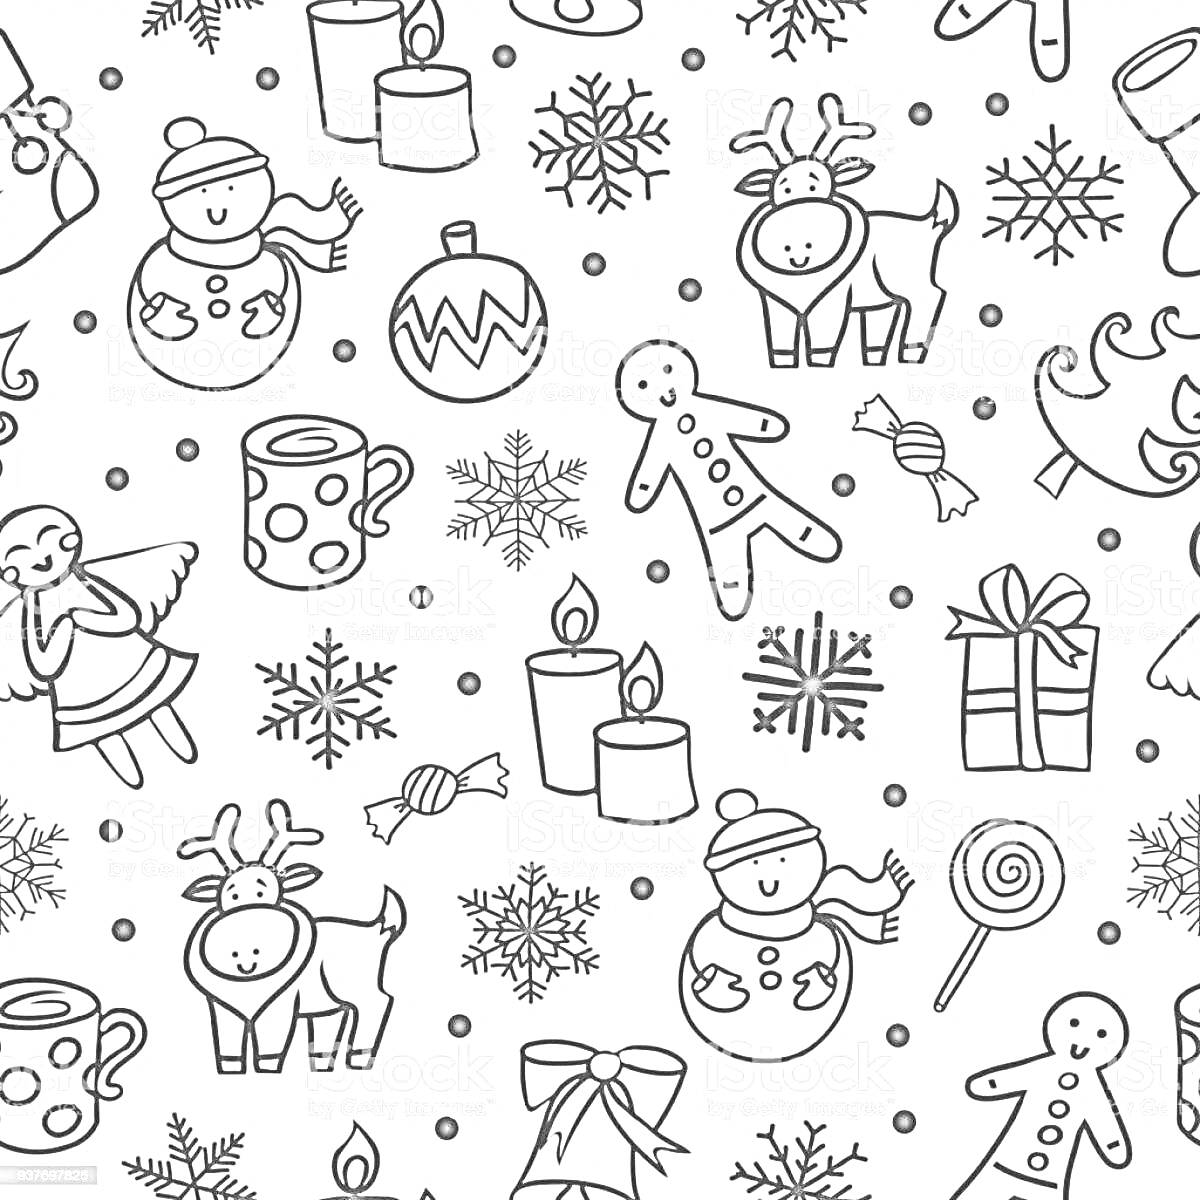 Раскраска Новогодний узор с оленьями, пряничными человечками, снежинками, снеговиками, подарками, елками, свечами, ангелами, кружками, леденцами, конфетами и новогодними шарами